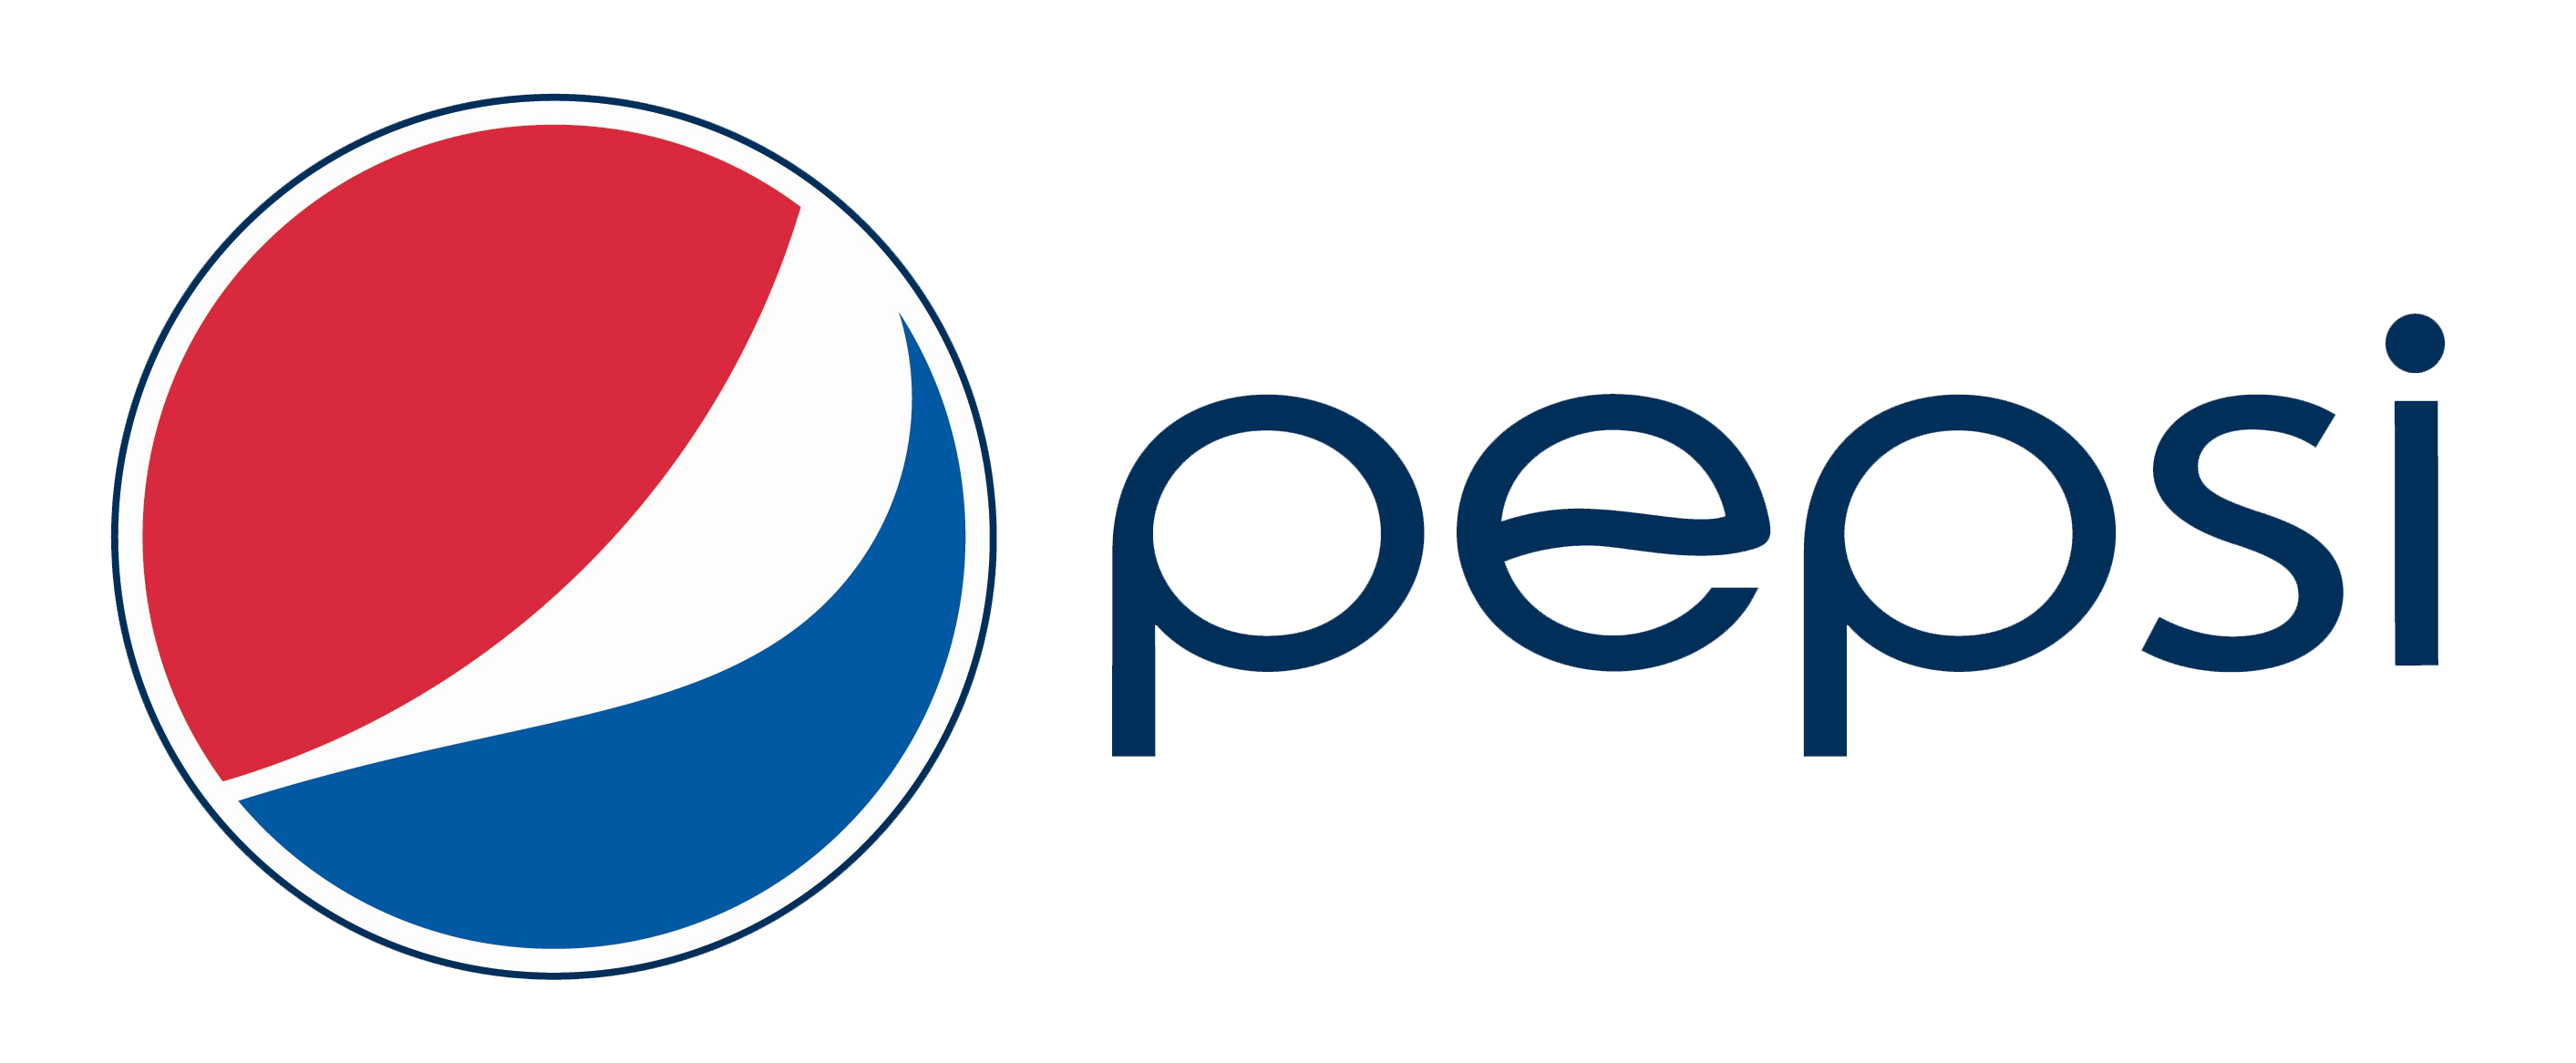 Glass Bottle Pepsi